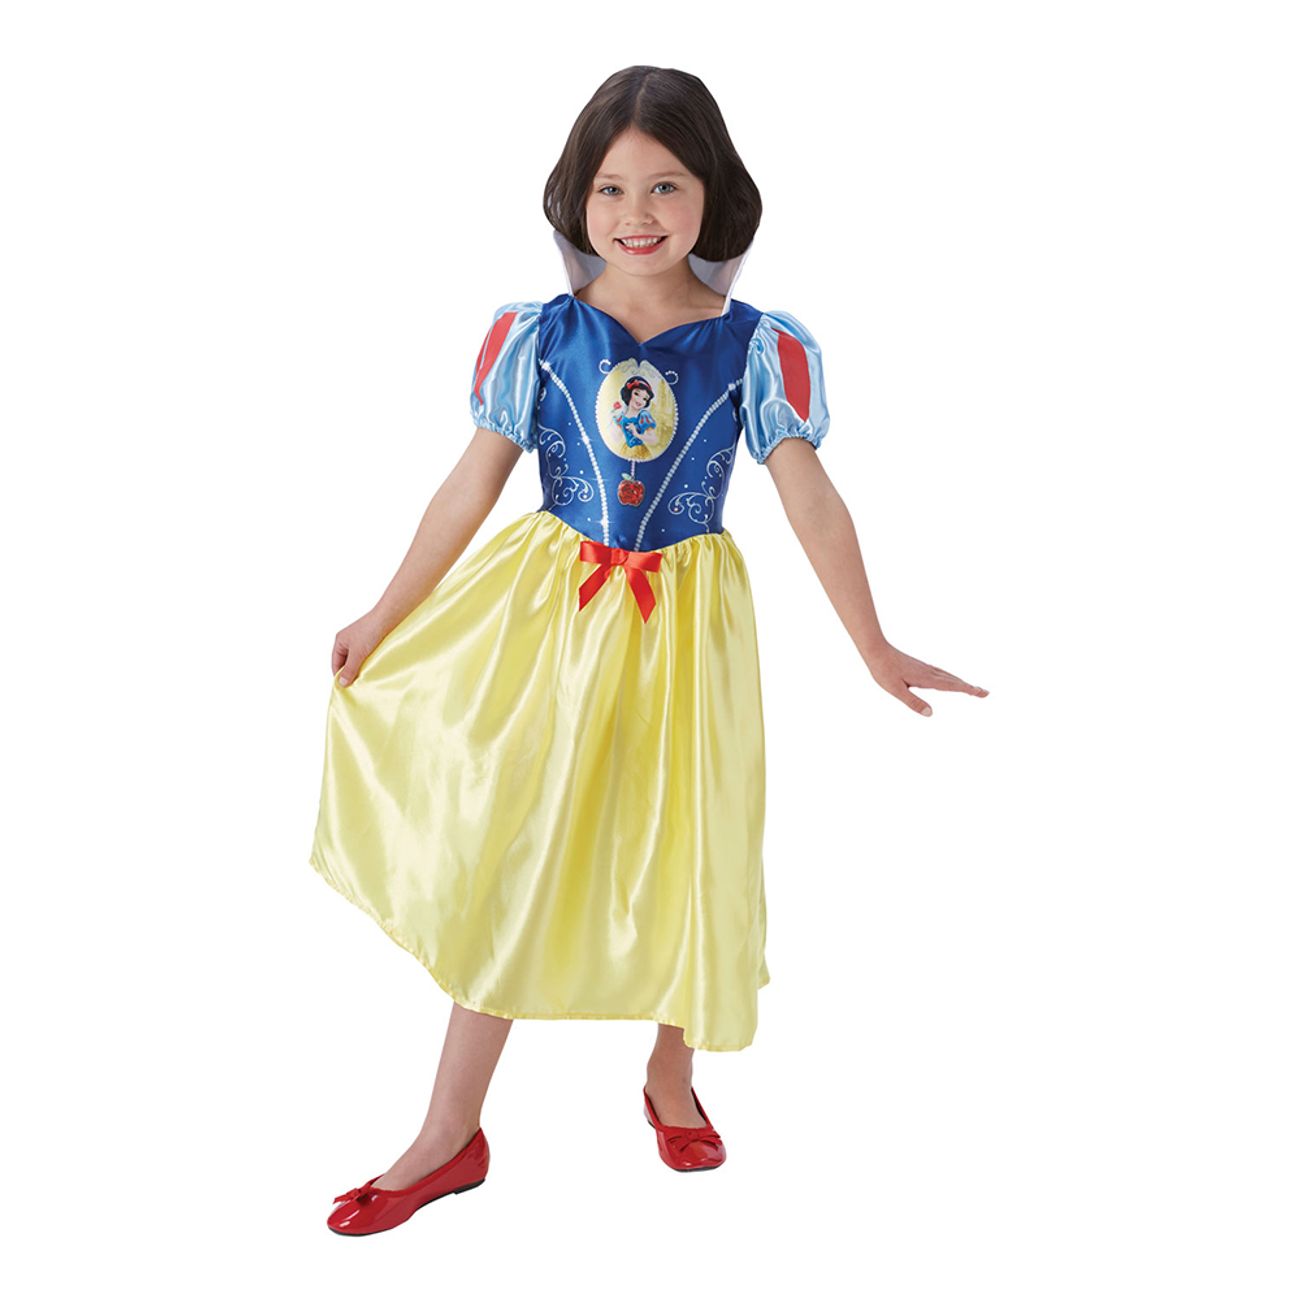 Snehvide børnekostume - Disney prinsesse kostume til børn